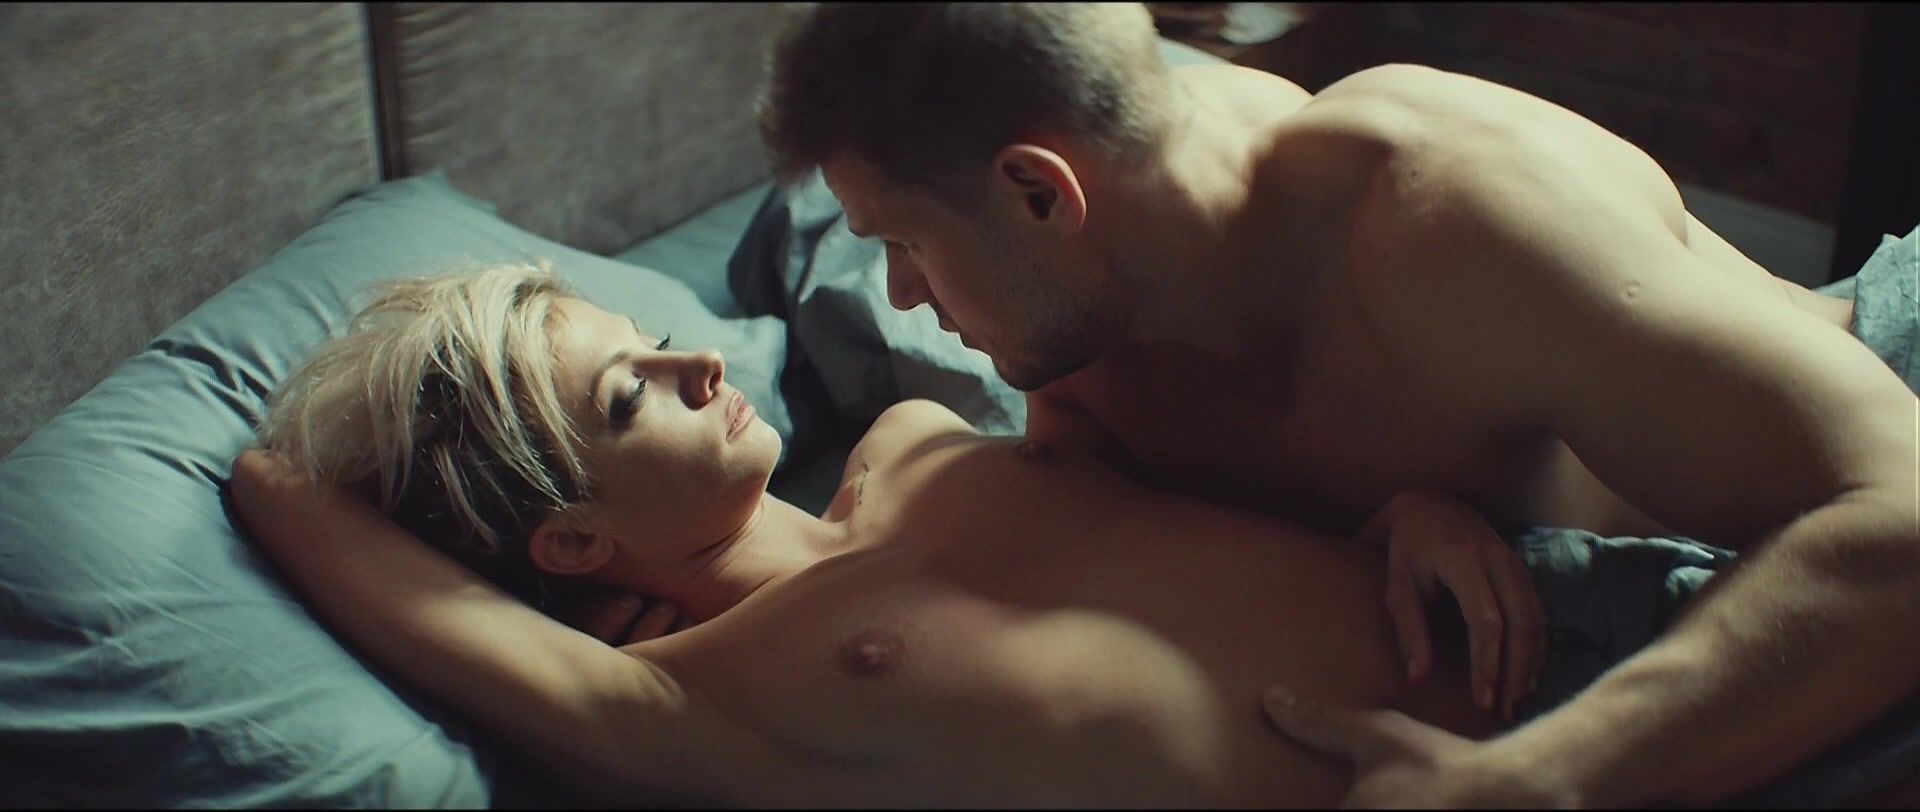 VideoBox Polina Maksimova naked - Without Me (2018) PornHubLive